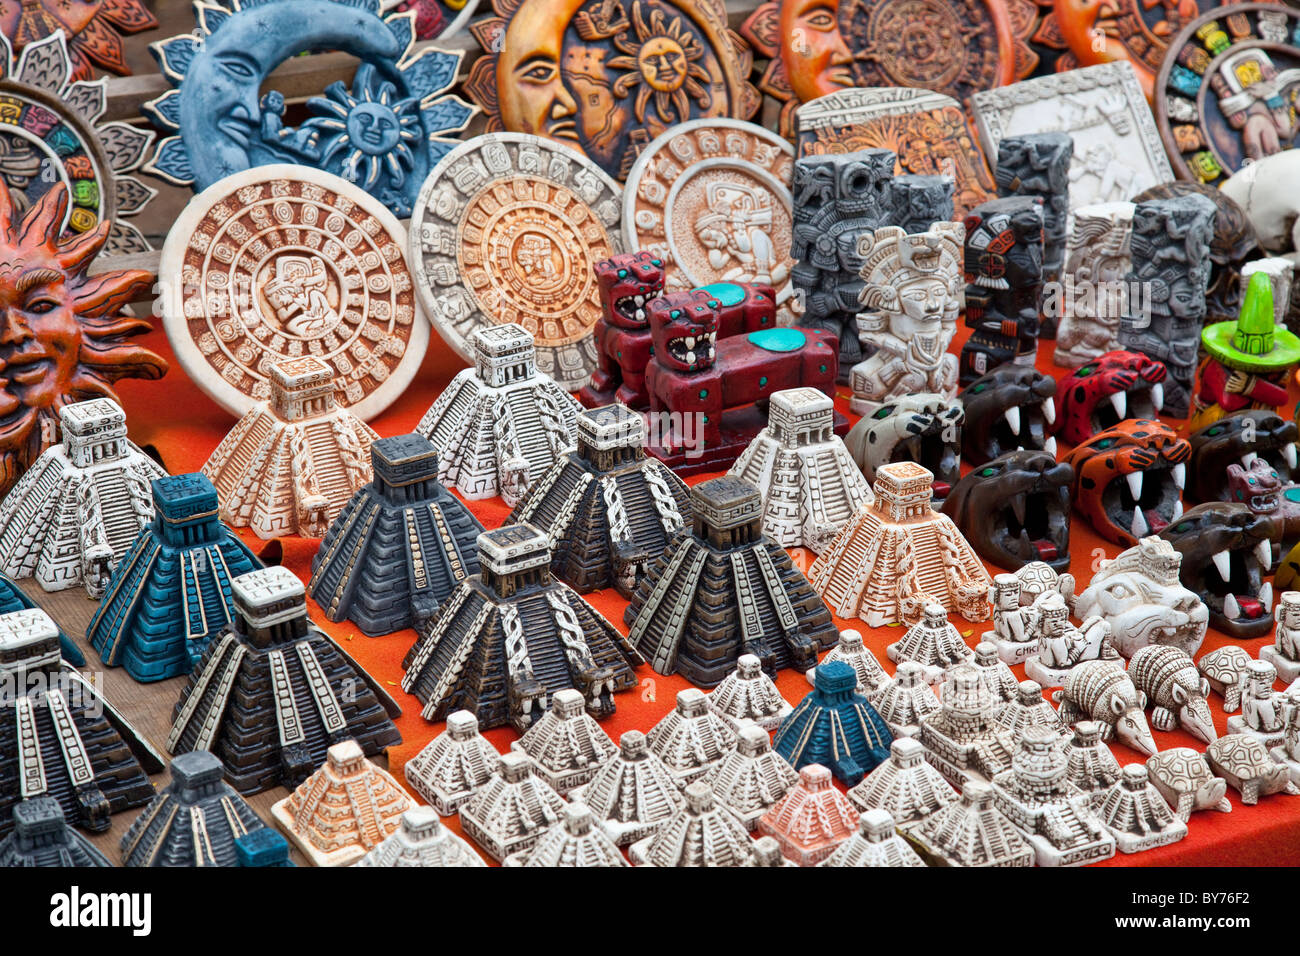 Mayan souvenirs, Chichen Itza, Mexico Stock Photo